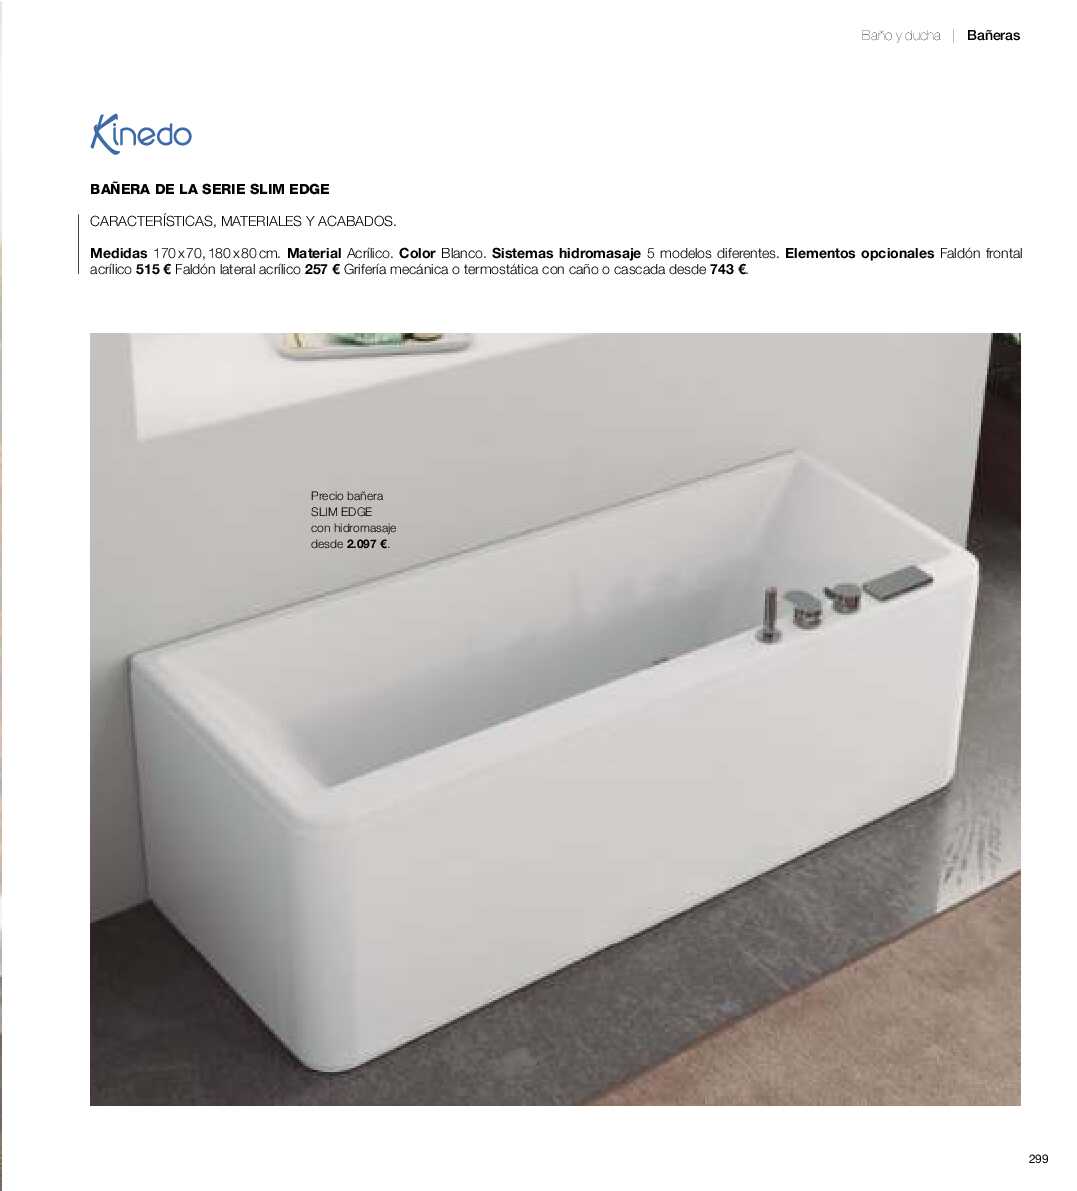 Catálogo de baños Gamma. Página 298